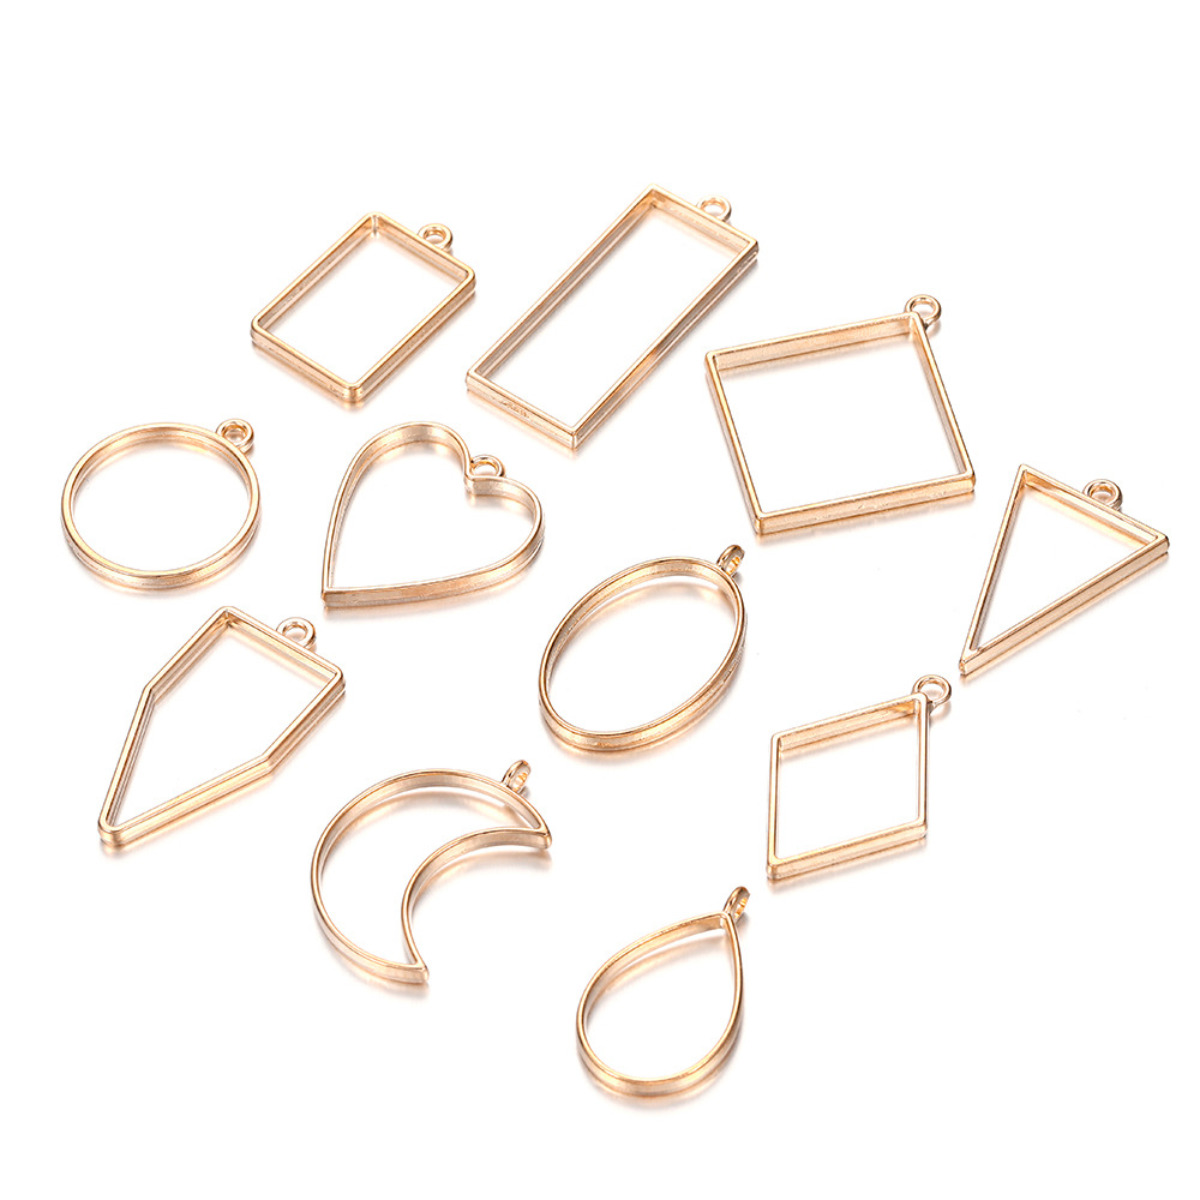 60pcs Open Bezels for Jewelry Making,Open Bezel Blank Trays Square Open Back Bezel Pendants Open Bezel Accessories Resin Molds for Jewelry Findings